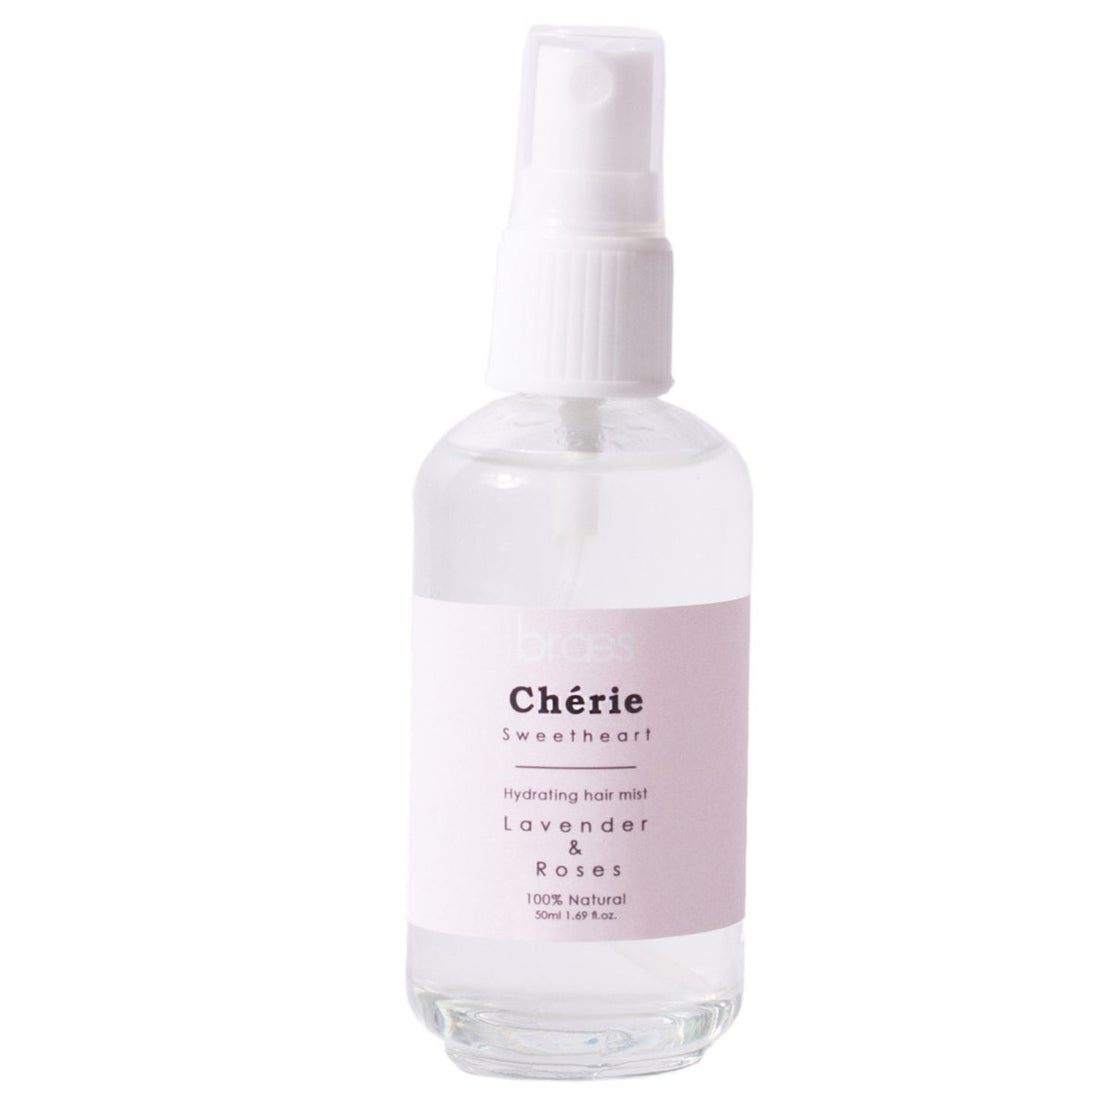 Braes Cherie, Sweetheart – Hydrating Hair Mist lavender 50ml